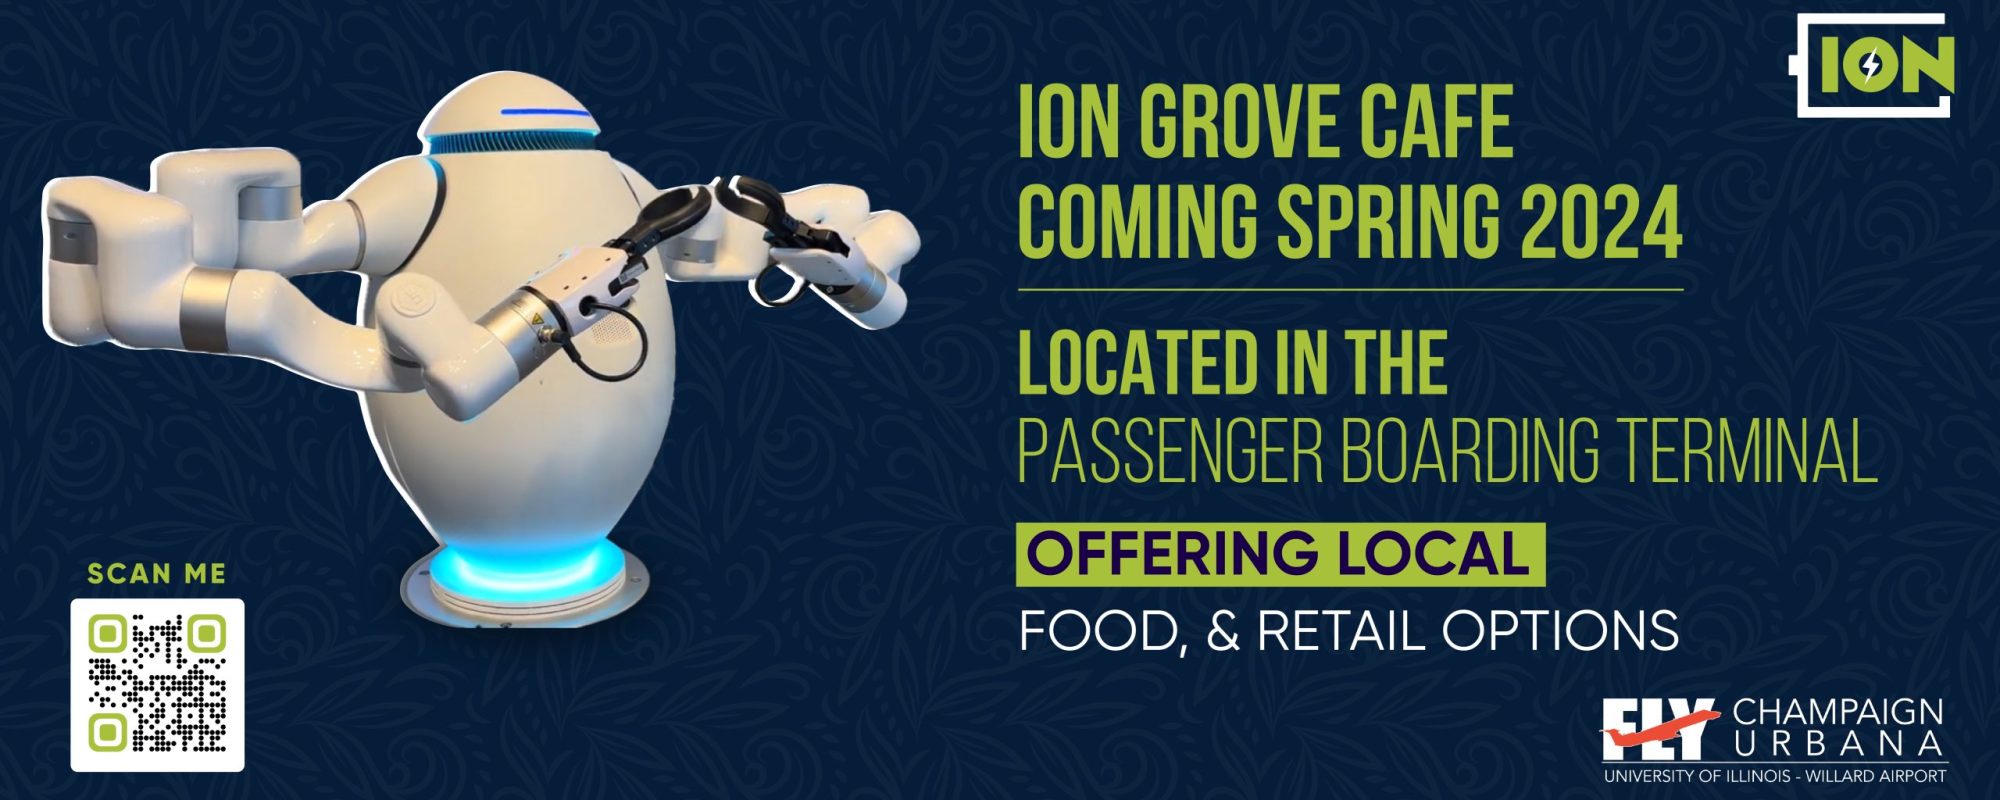 Ion Grove Cafe